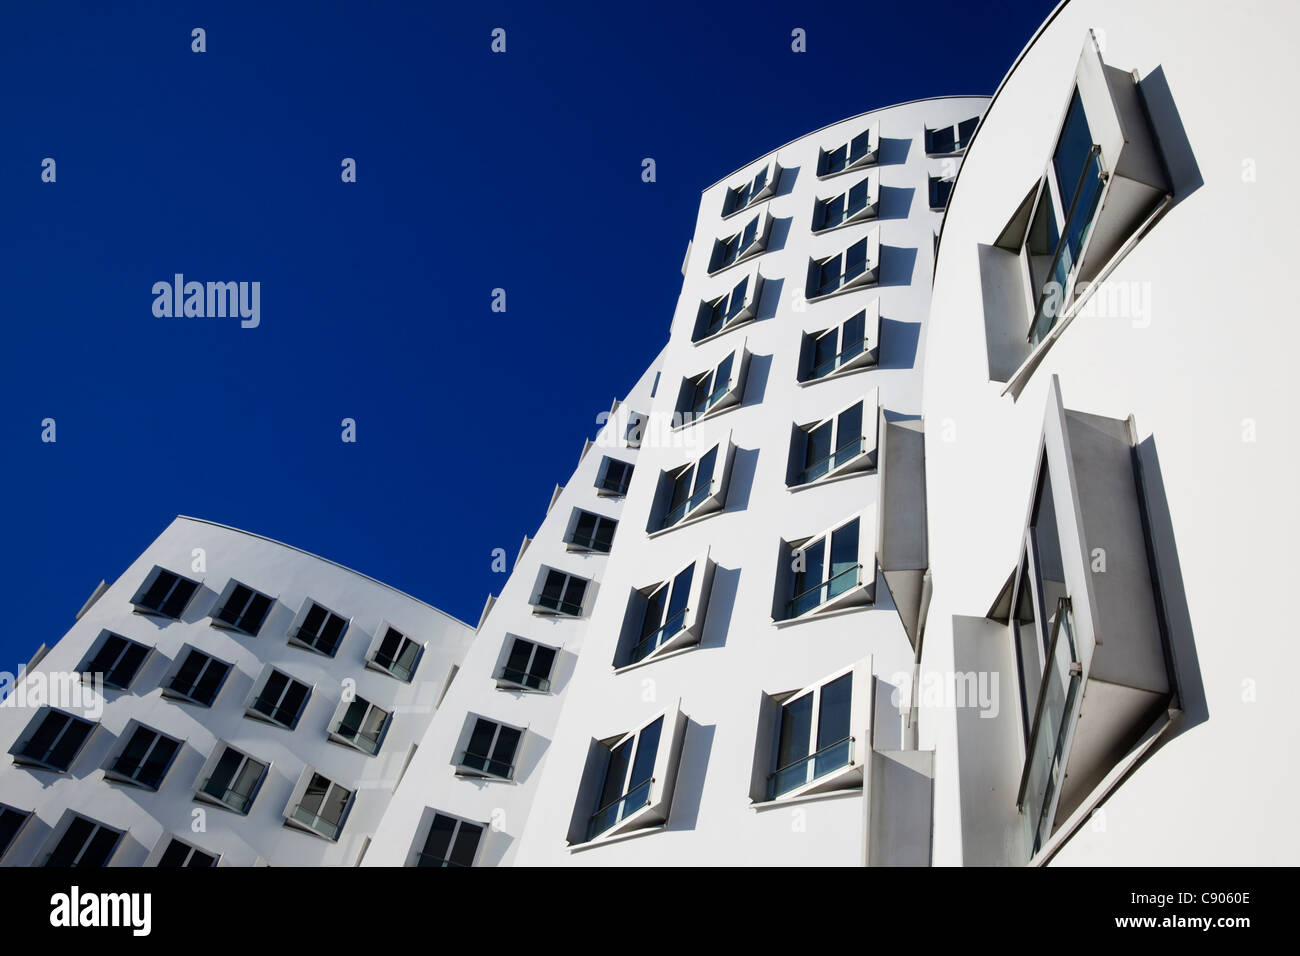 Neuer Zollhof, Gebäude vom Architekten entworfen, Gehry, Medienhafen, Düsseldorf, Nordrhein-Westfalen, Deutschland, Europa Stockfoto